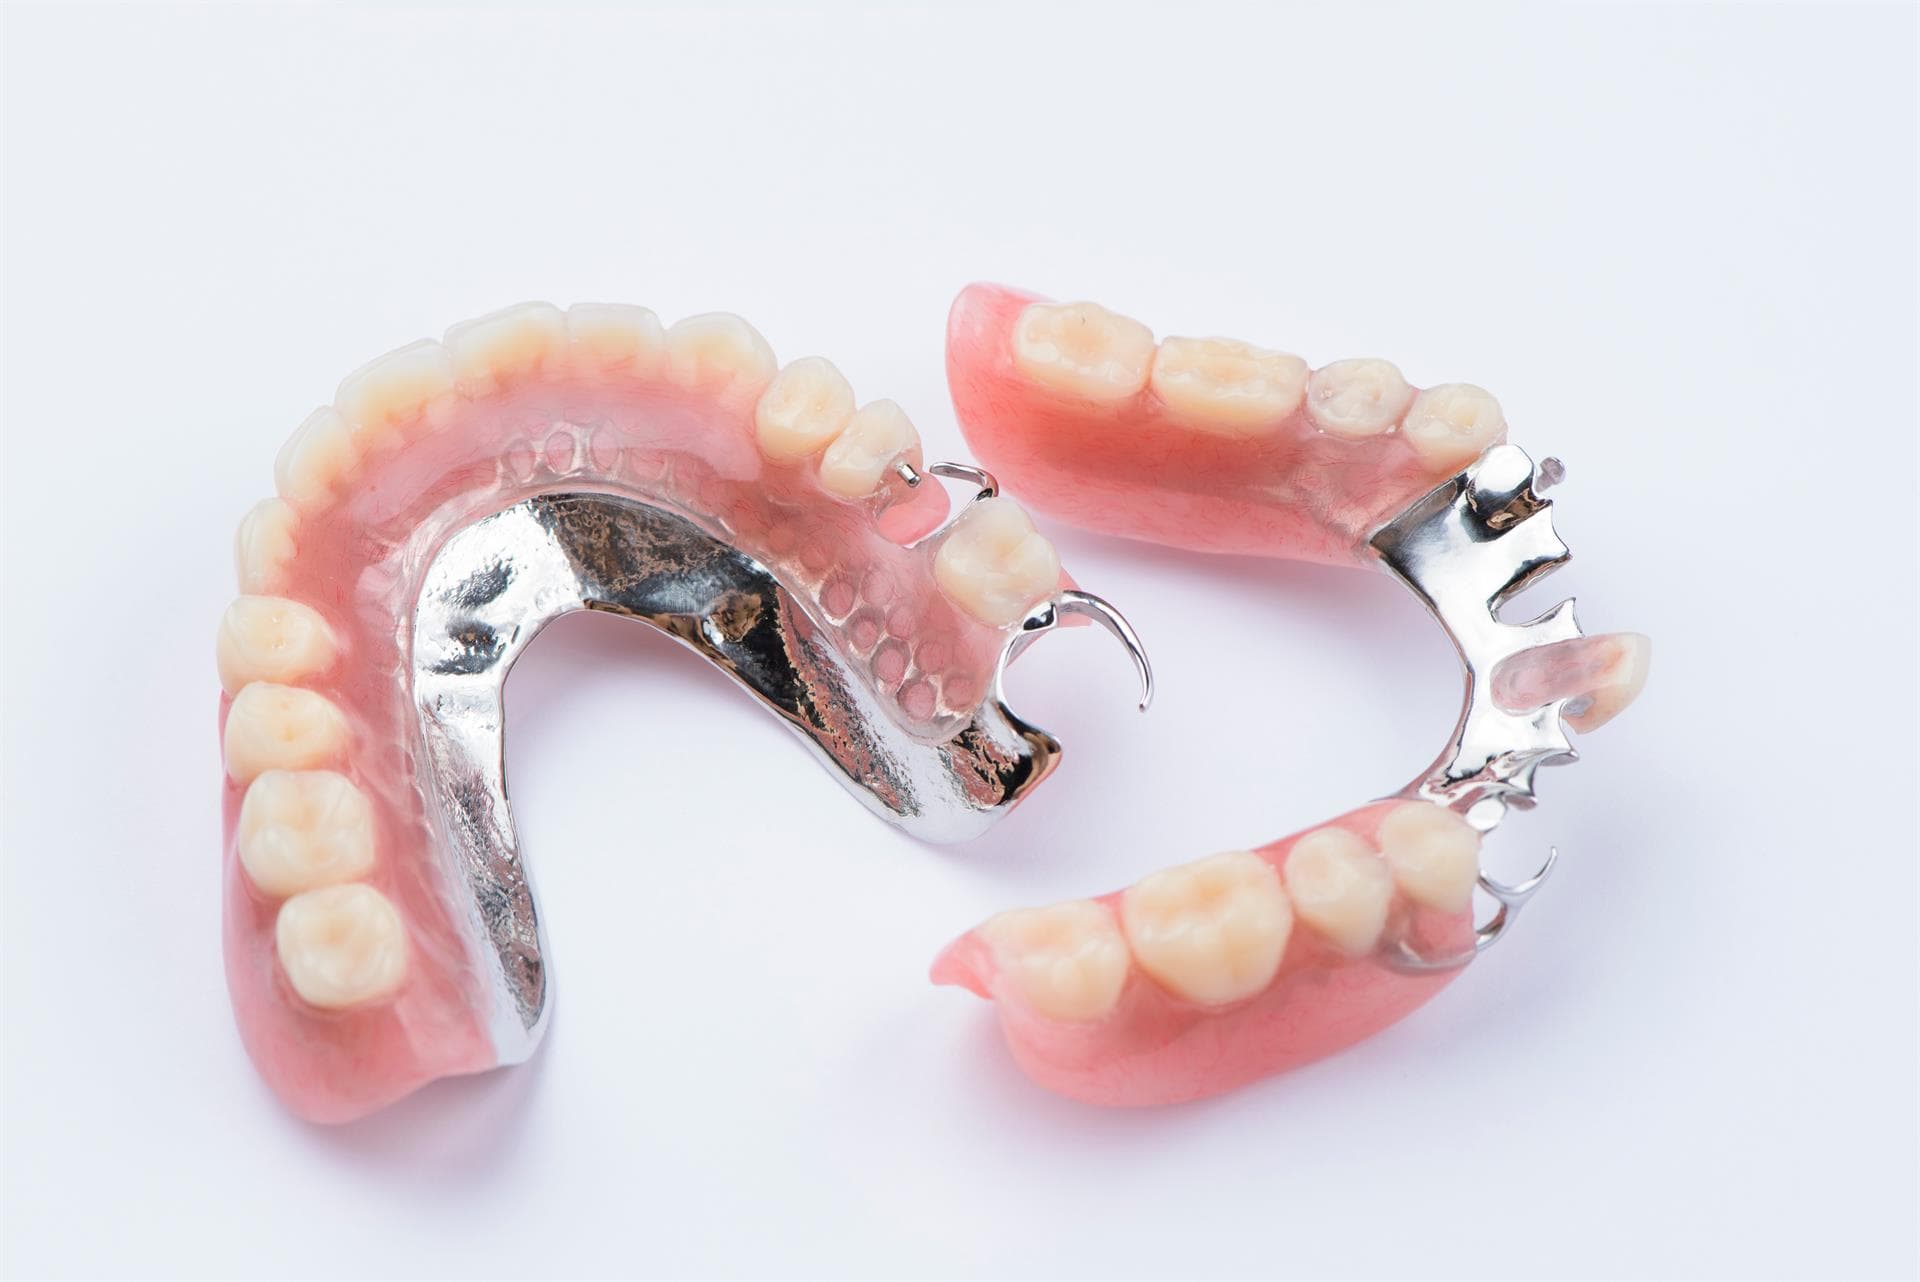 Colocación de prótesis dentales mixtas